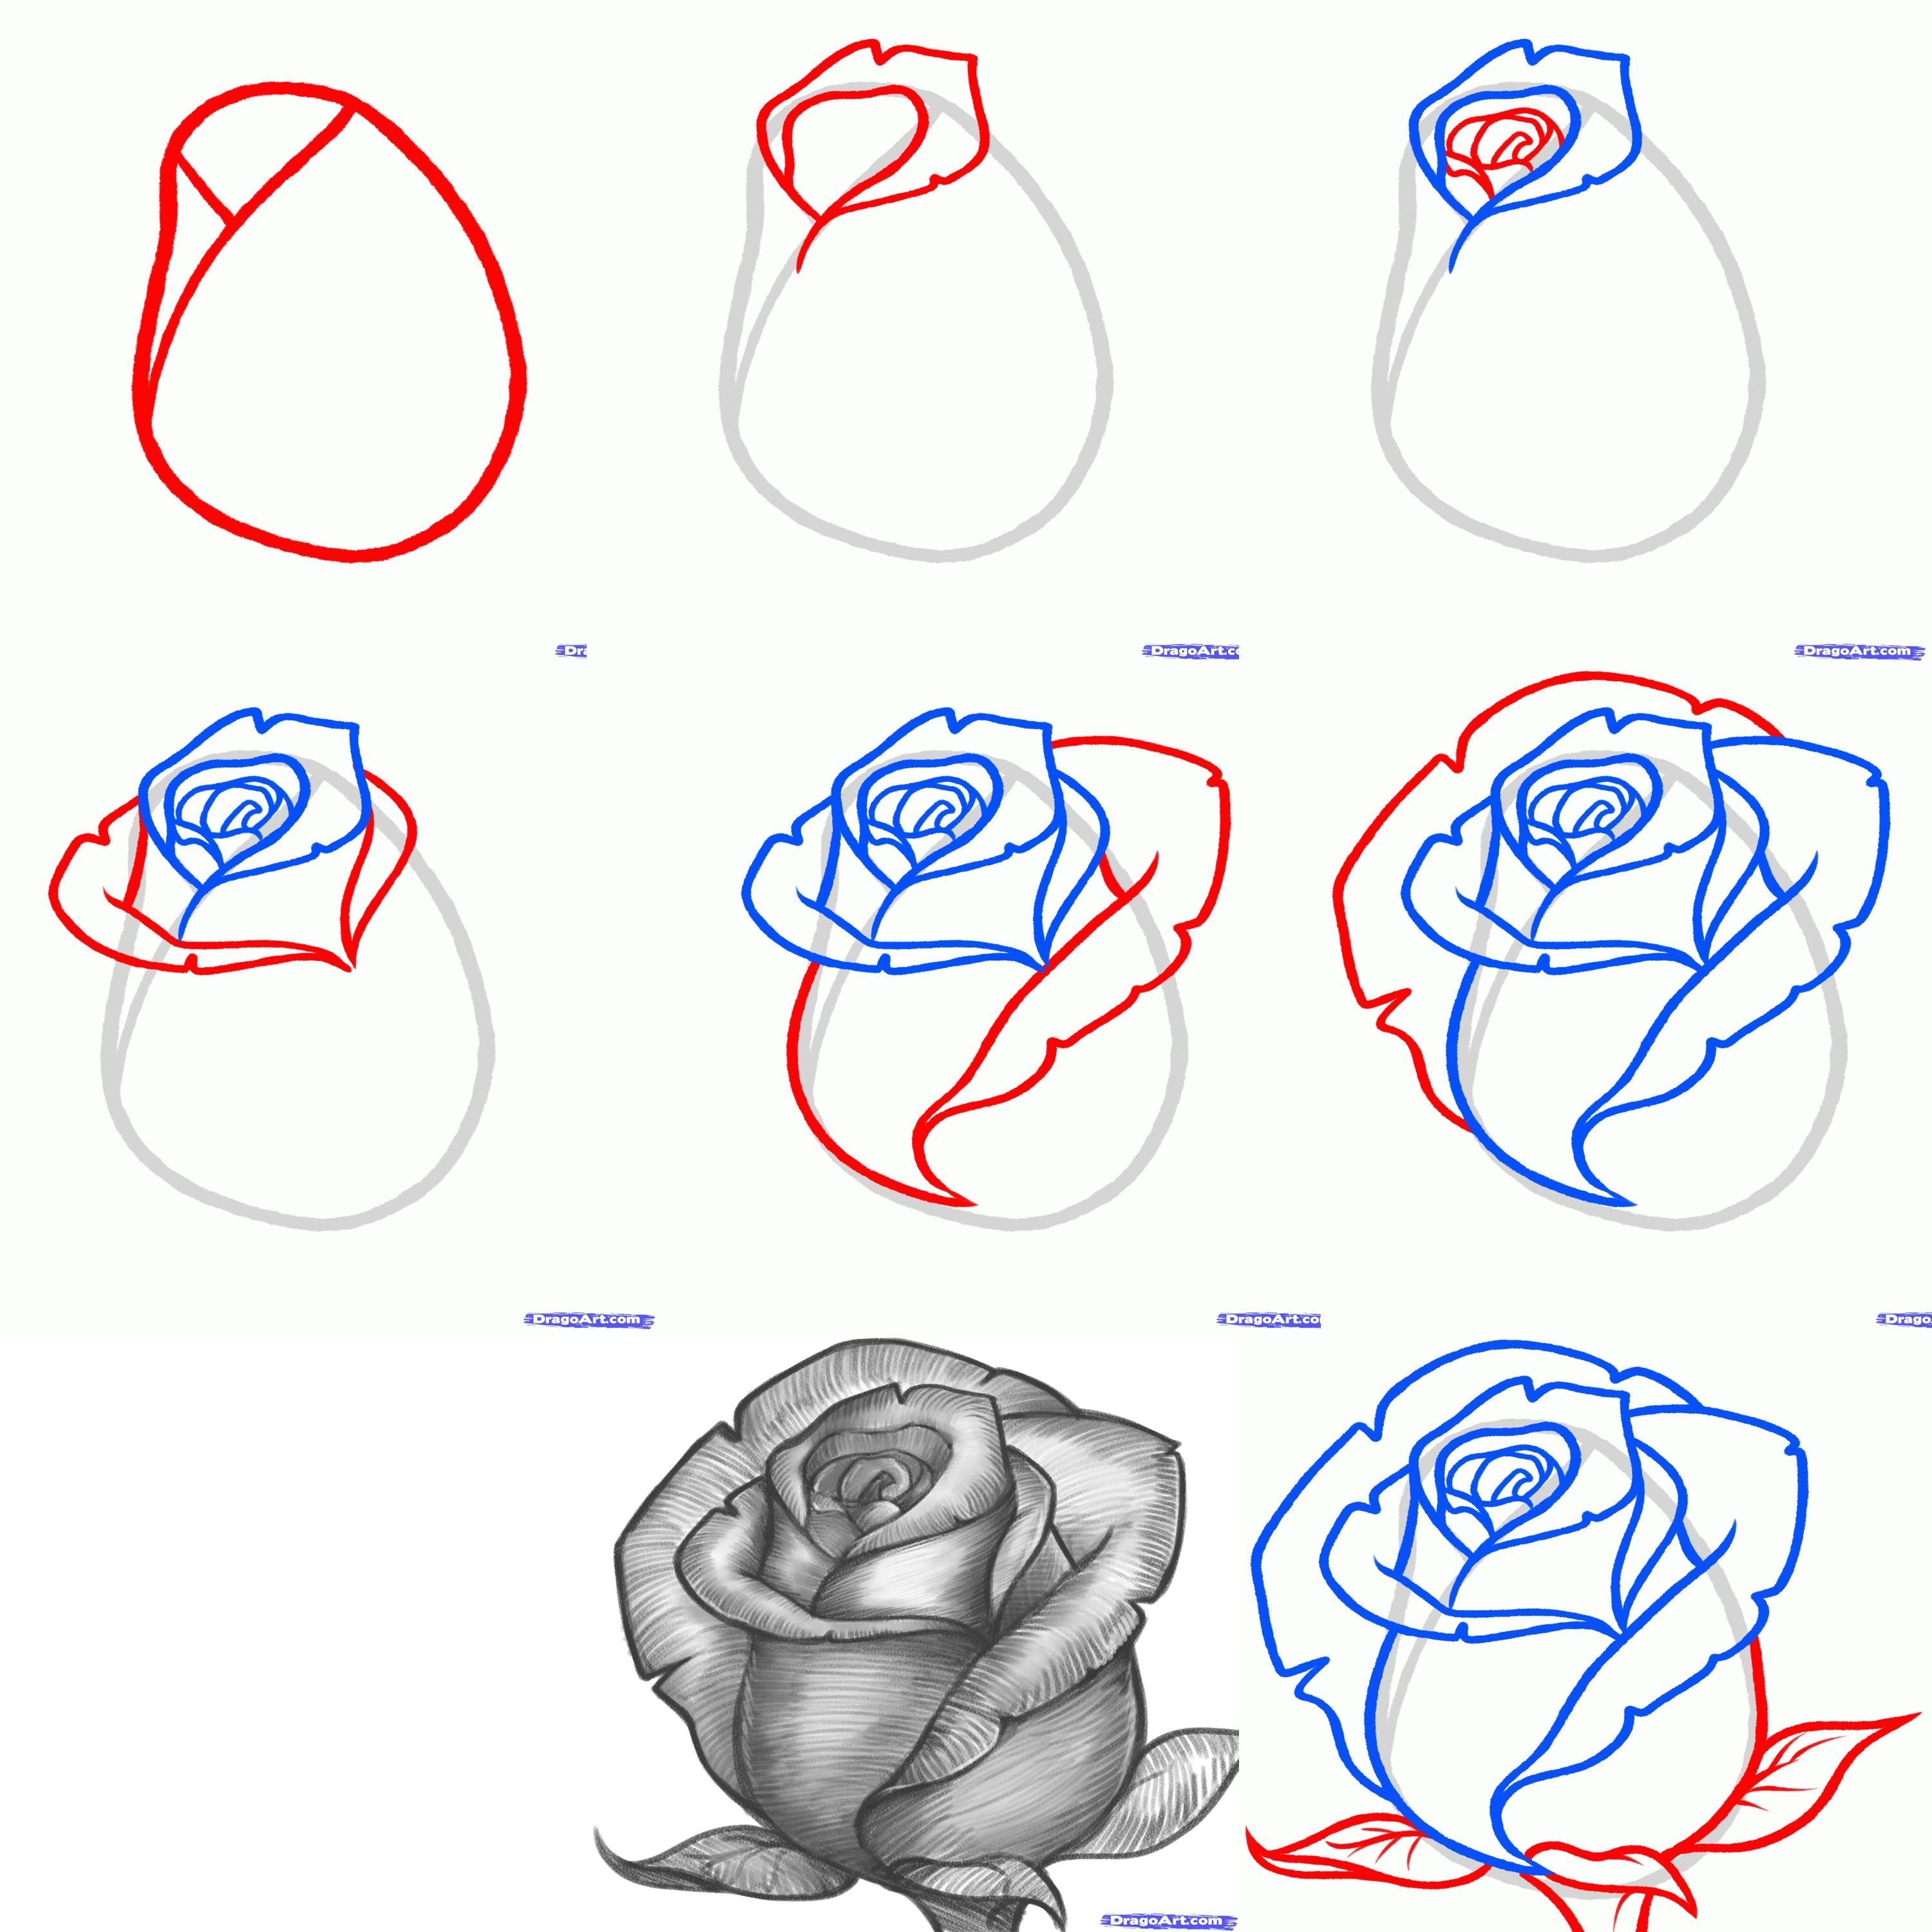 Поэтапное рисование розы карандашом